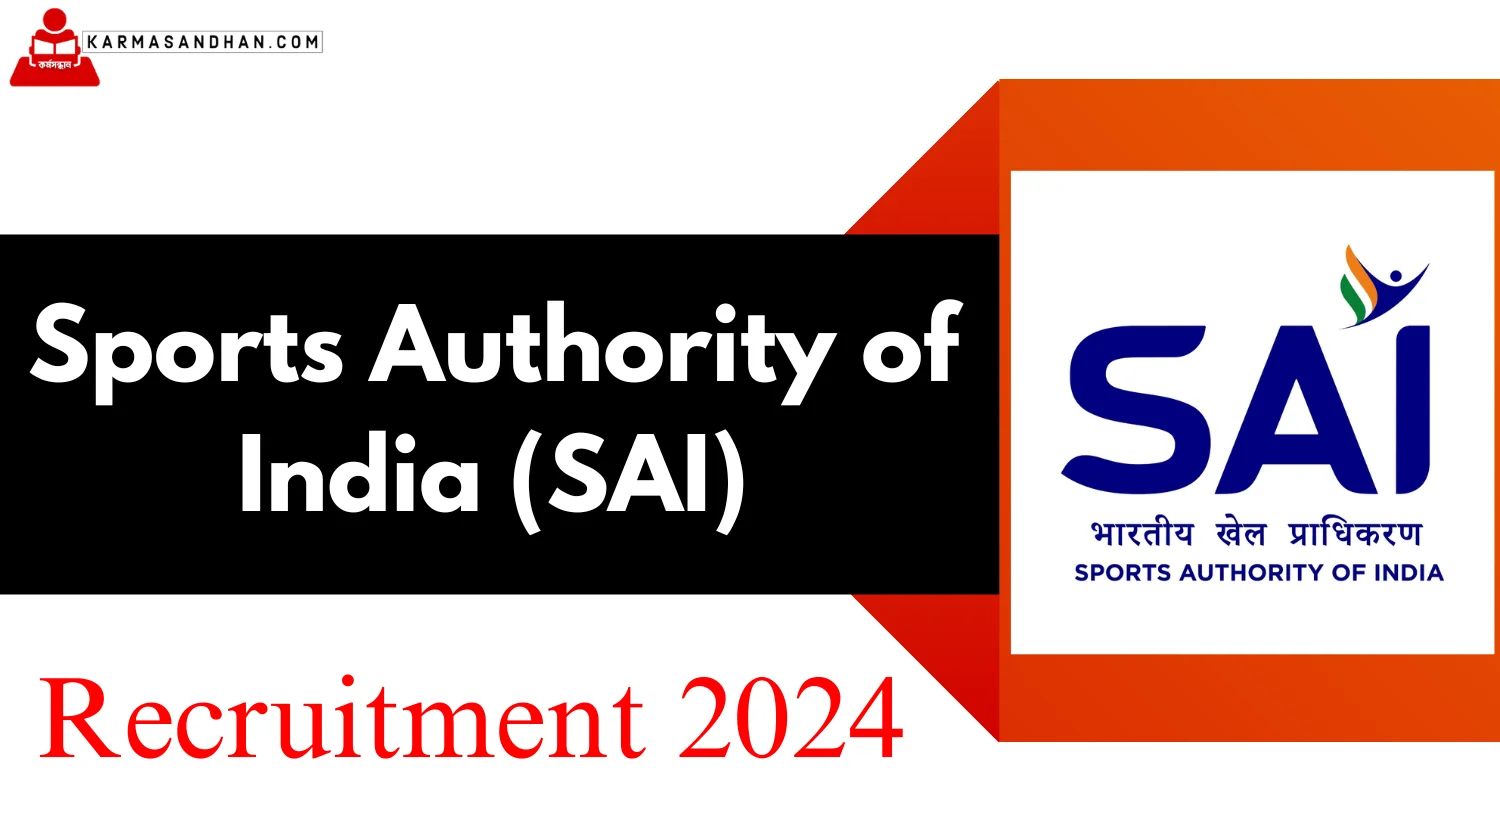 SAI Lead Research Recruitment 2024